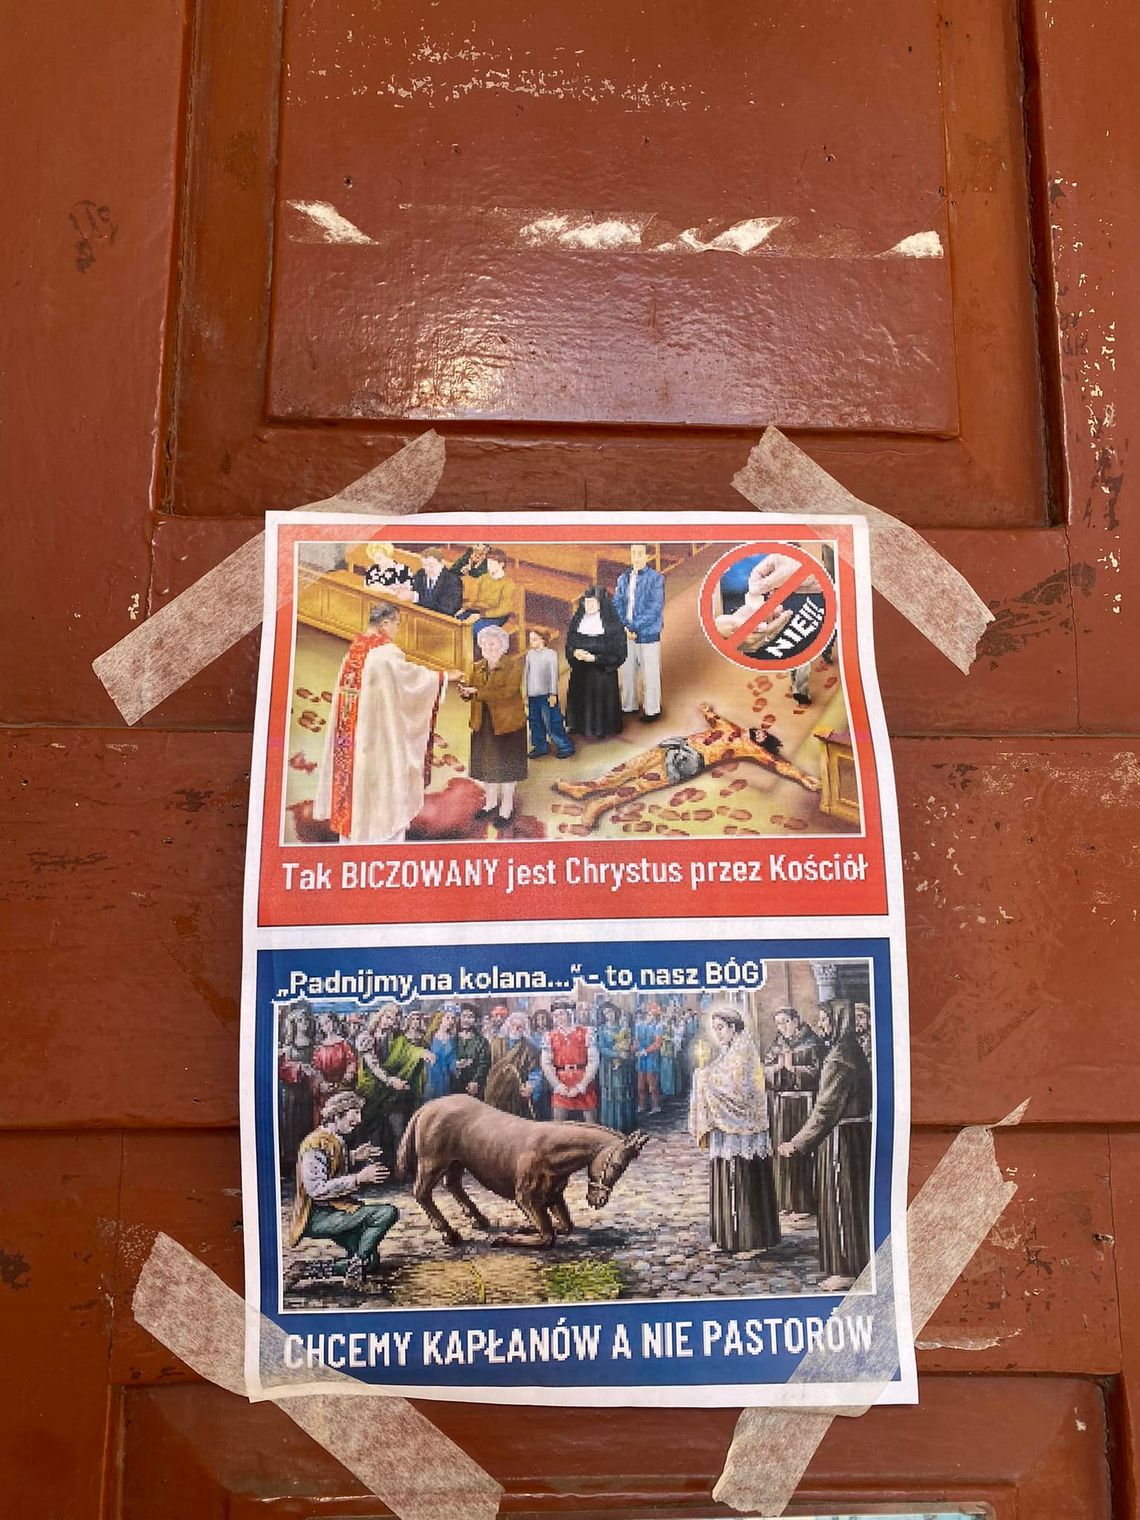 Plakat na drzwiach kościoła. "Chcemy kapłanów, a nie pastorów"